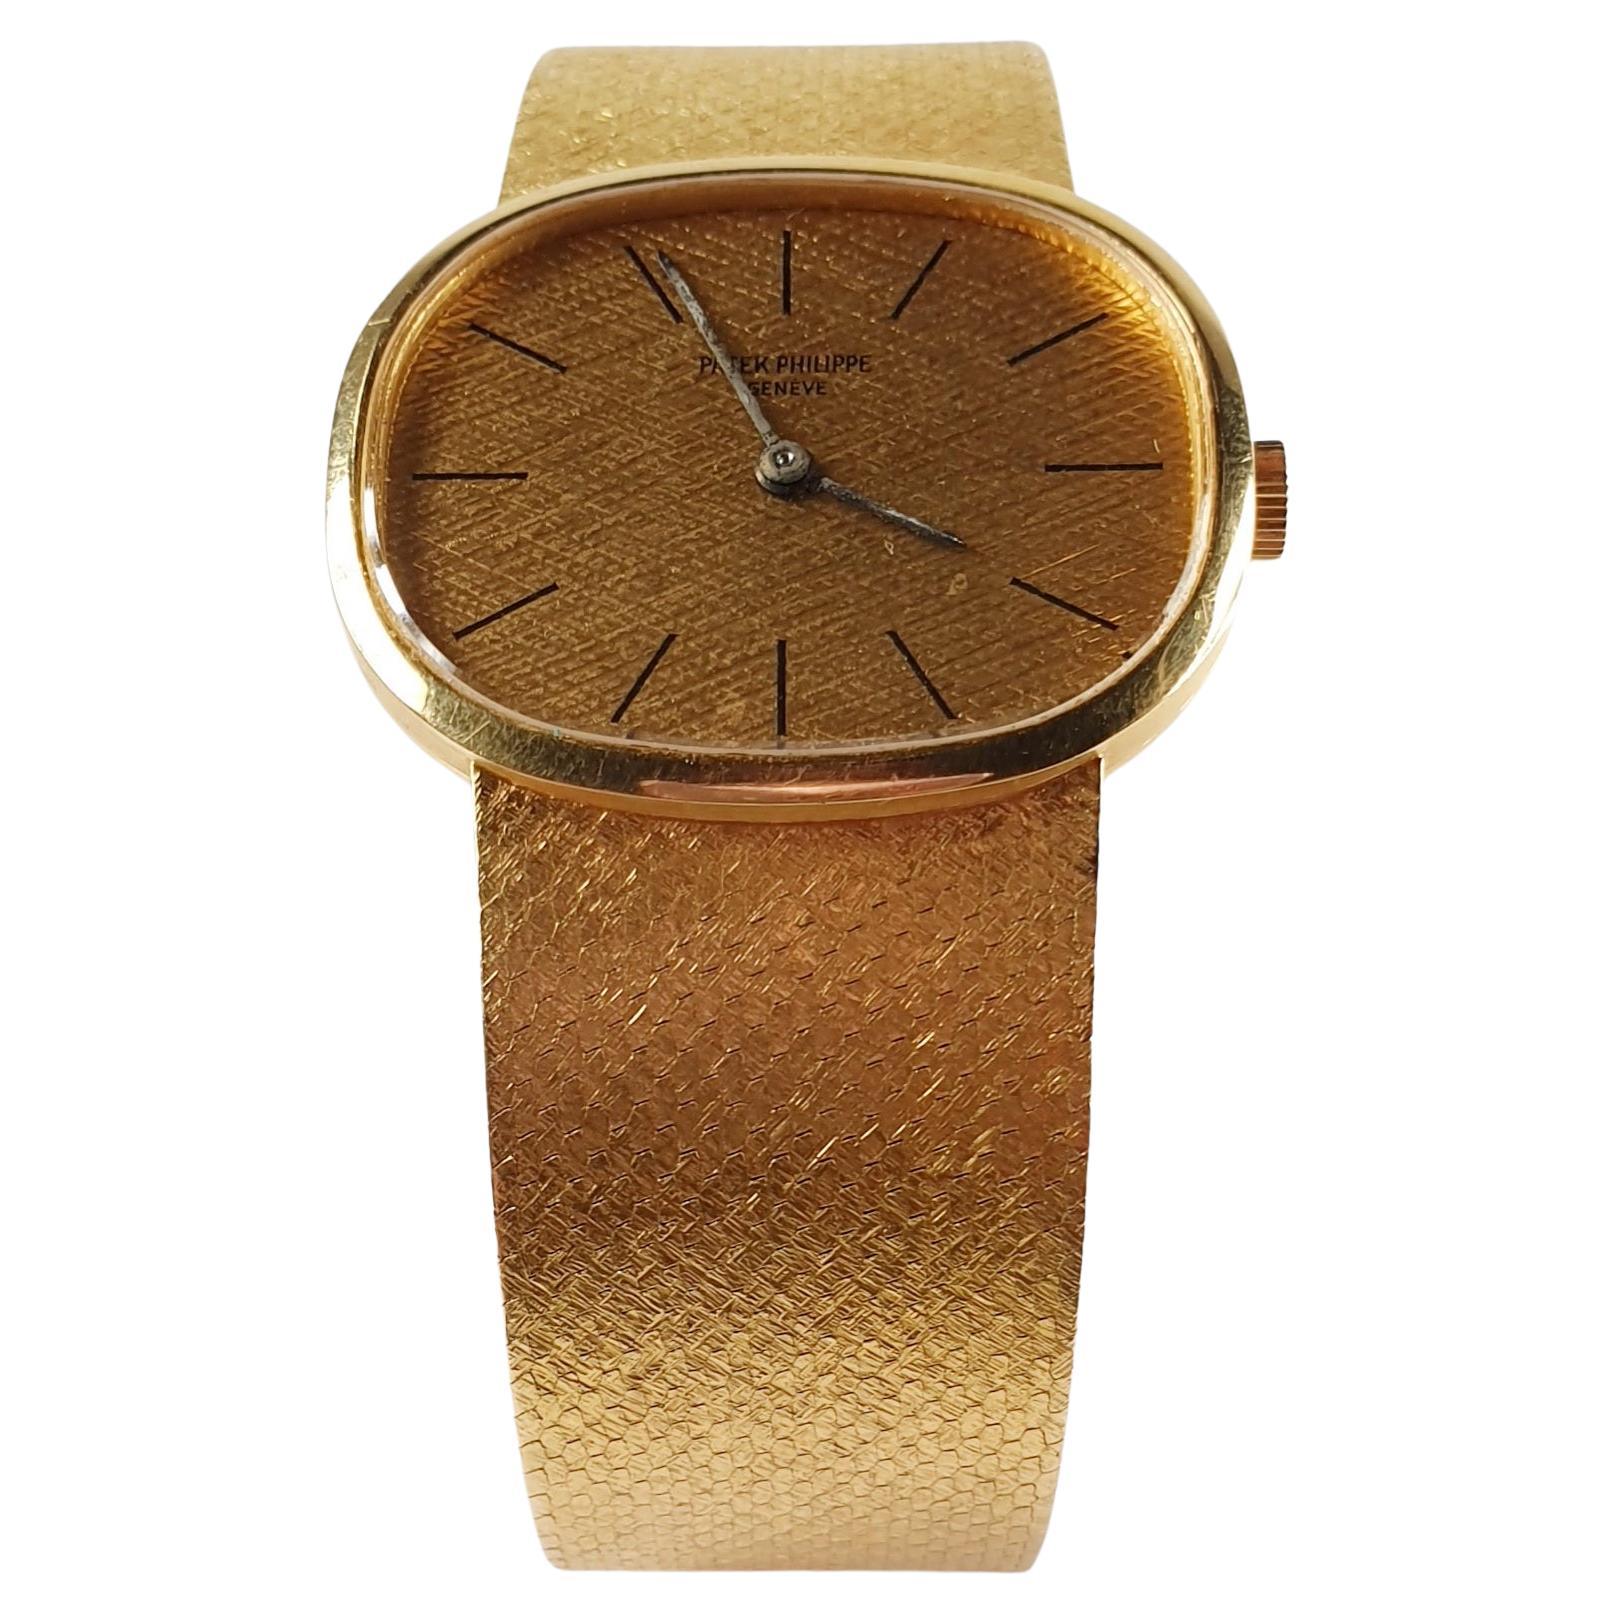 Modern Golden ElipsePatek Philippe Watch Champagne Dial   with original case 1970´s